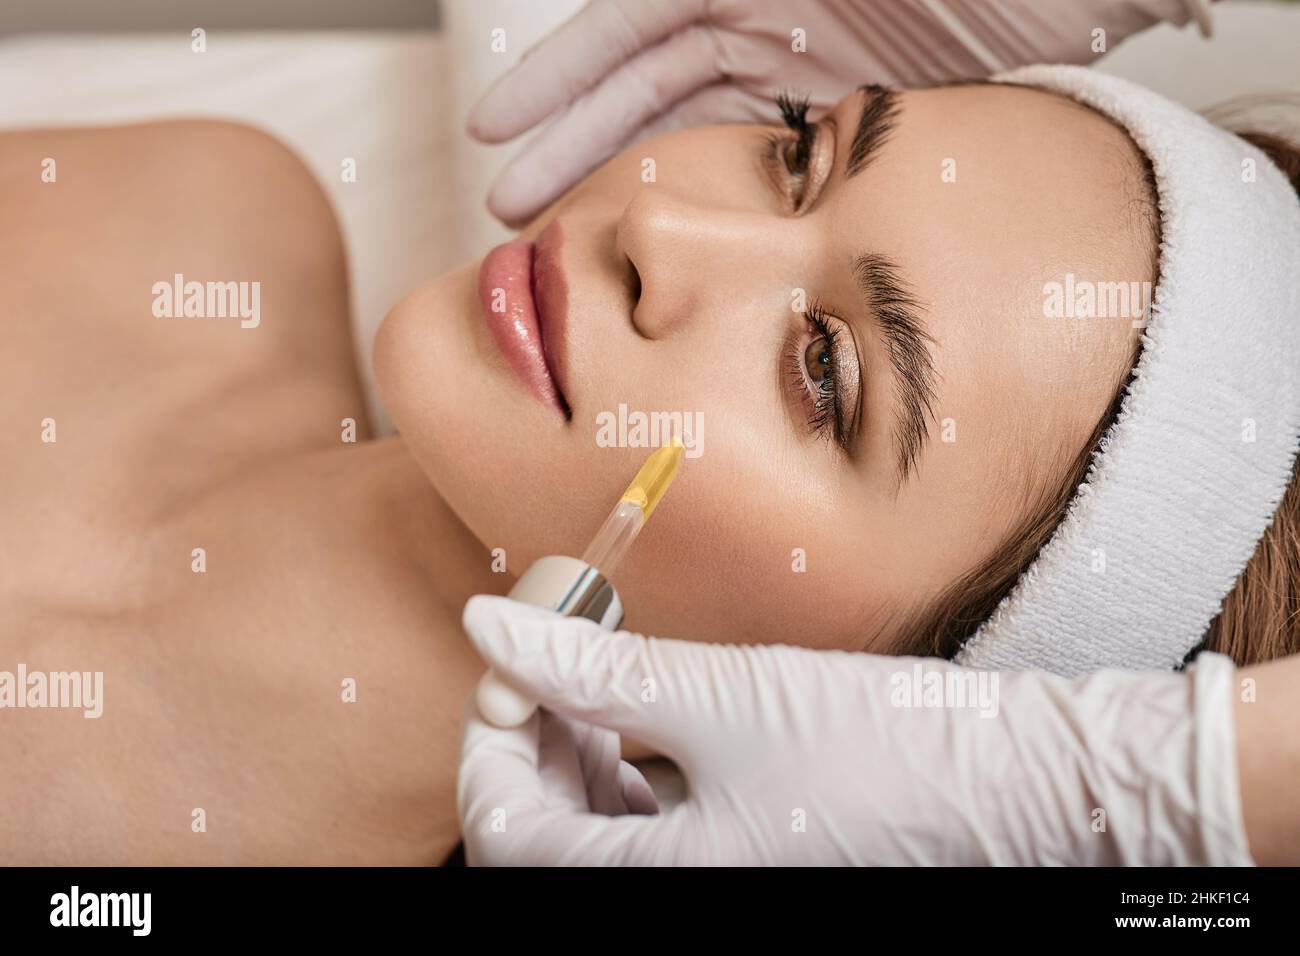 Gesichtshaut-Pflege mit Kosmetiköl und Serum. Schöne Frau, während die Kosmetikerin im Schönheitssalon Serum auf ihr Gesicht aufträgt Stockfoto